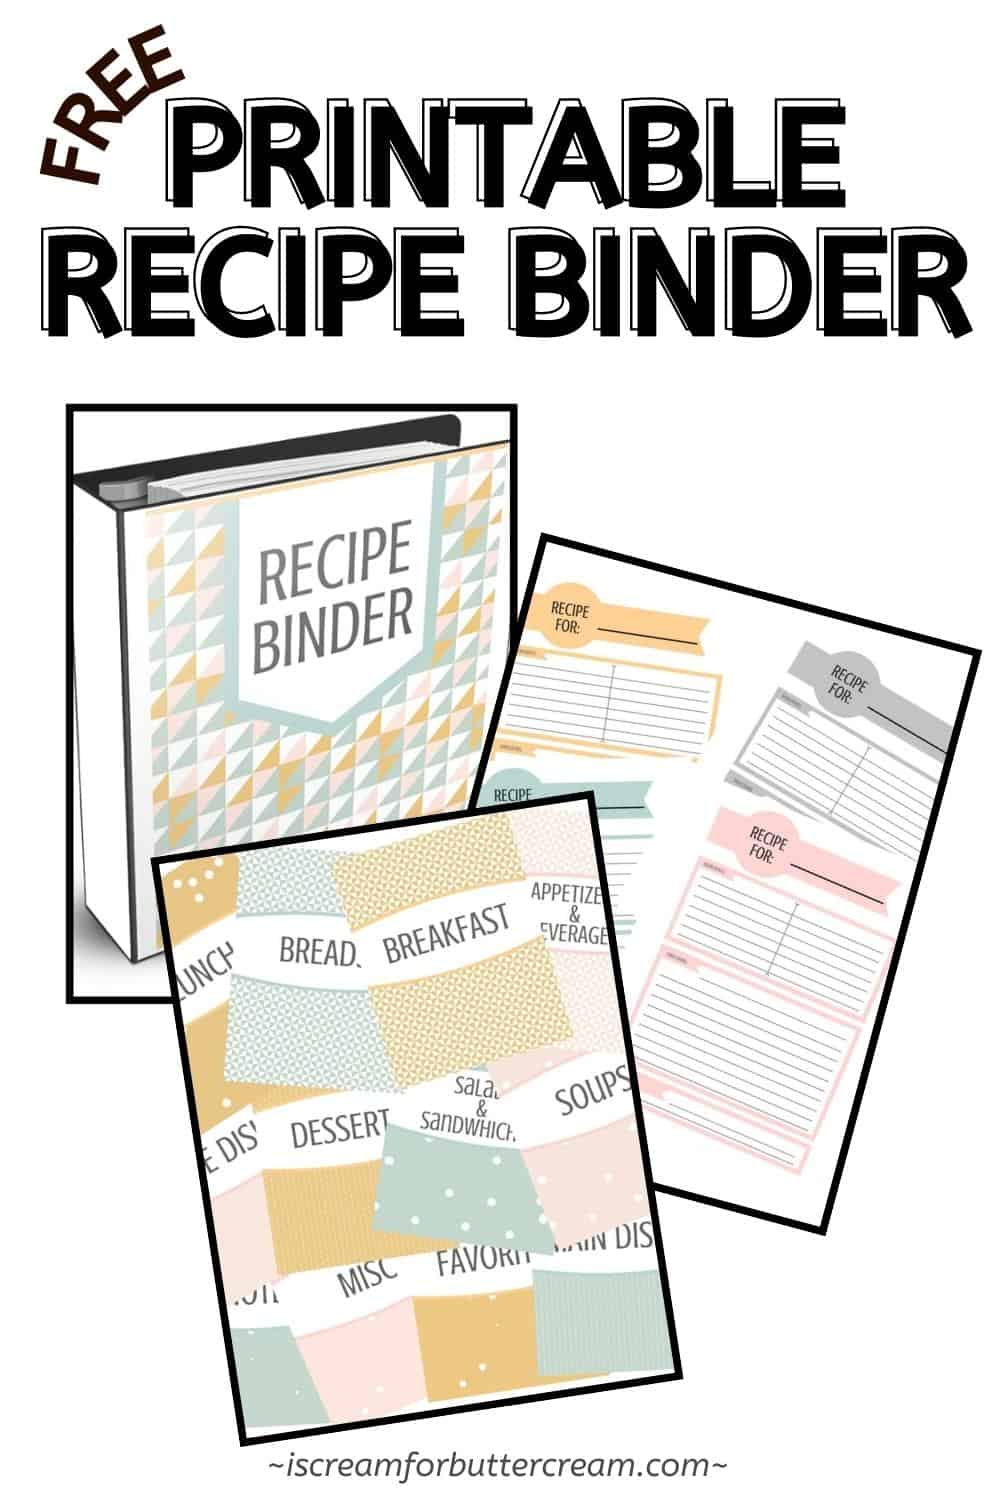 Printable recipe binder pin graphic.